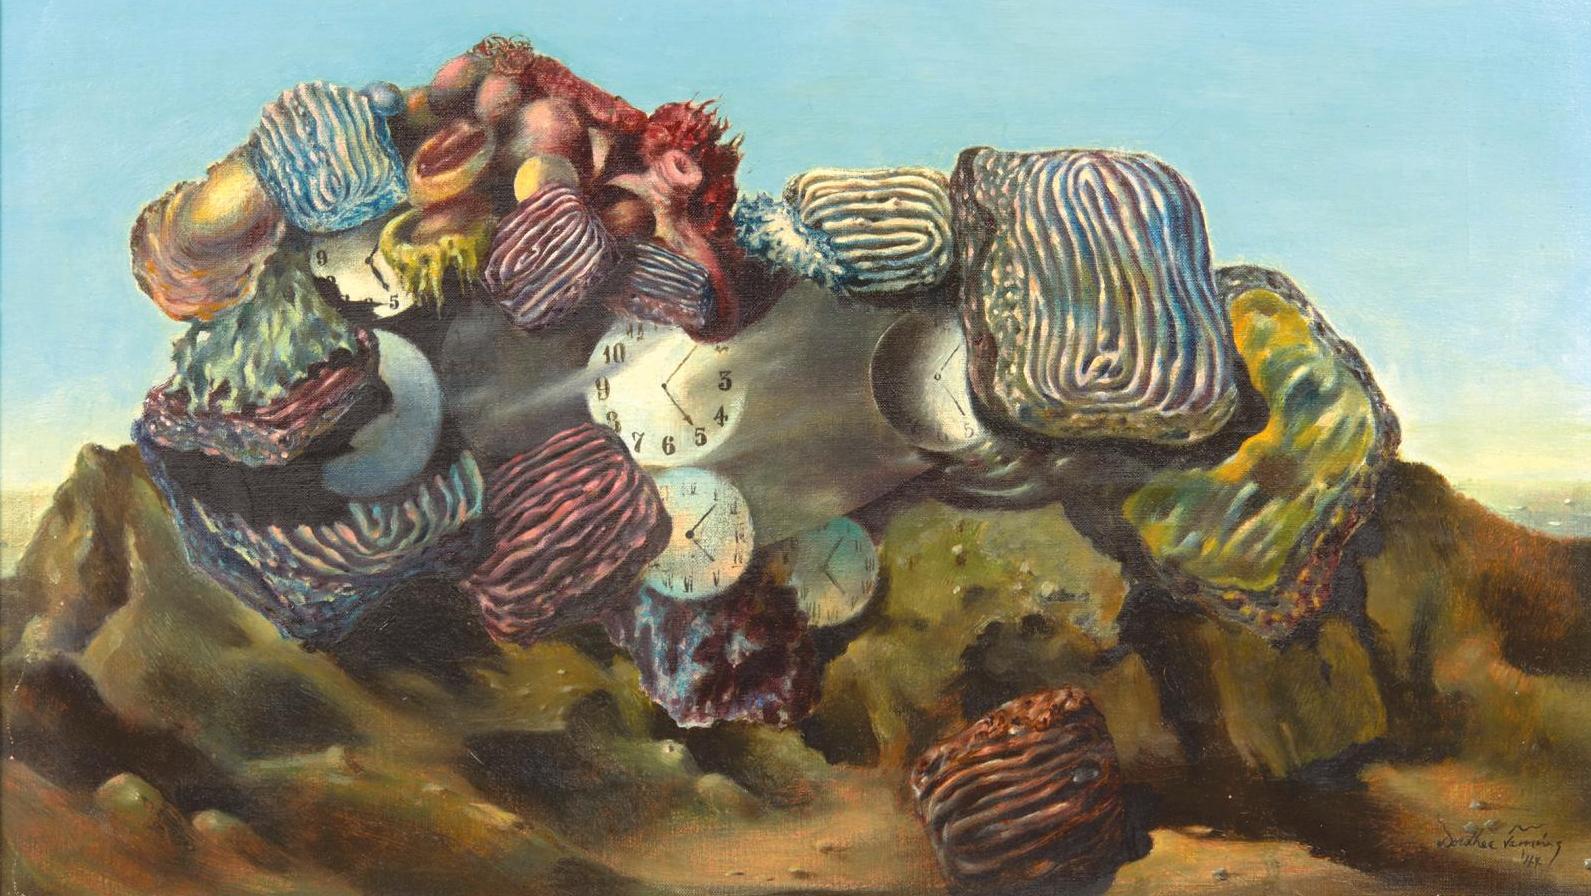 Dorothea Tanning (1910-2012), The Civilizing Influence, 1944, huile sur toile, 30,4 x 45,7 cm.... Mille et deux nuits de rêve